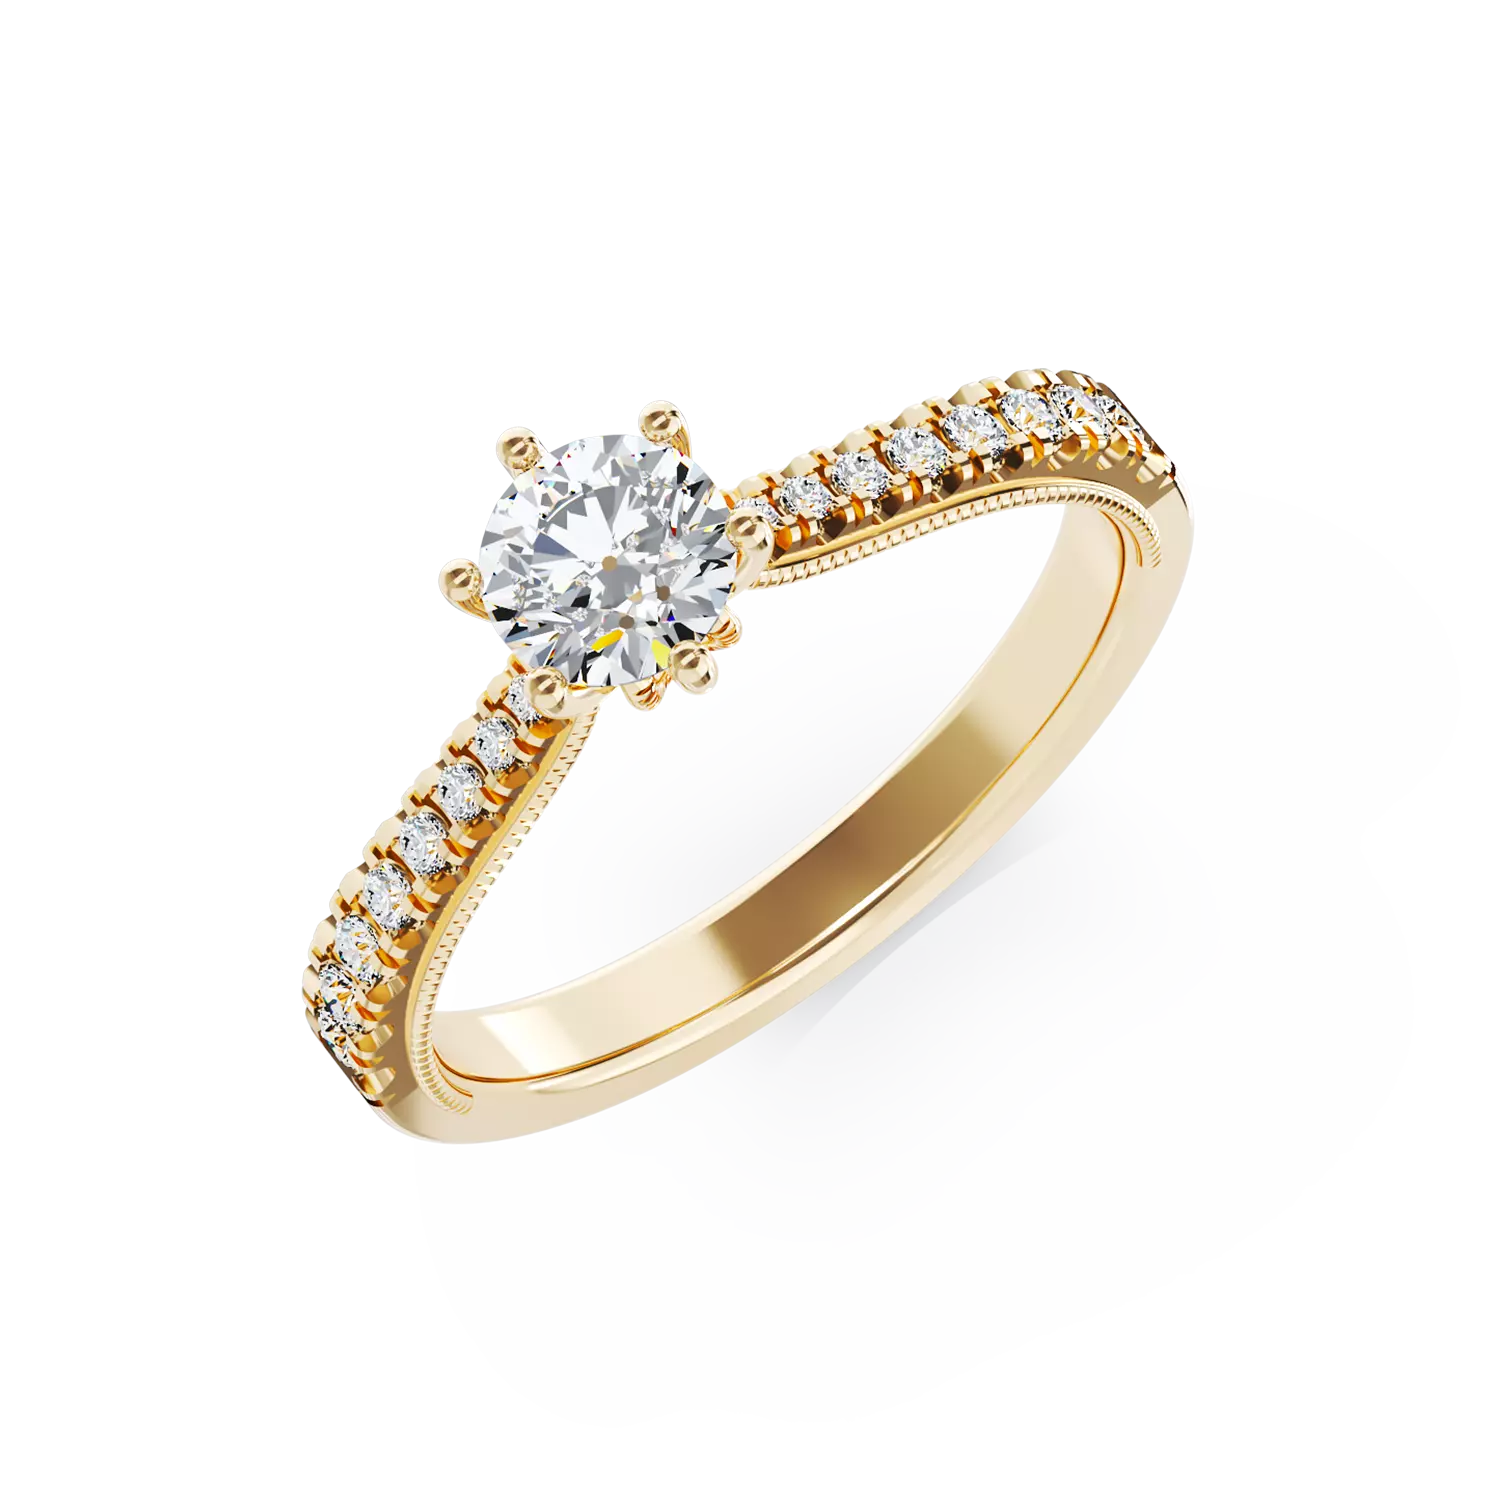 Eljegyzési gyűrű 18K-os sárga aranyból 0,24ct gyémánttal és 0,18ct gyémántokkal. Gramm: 2,4